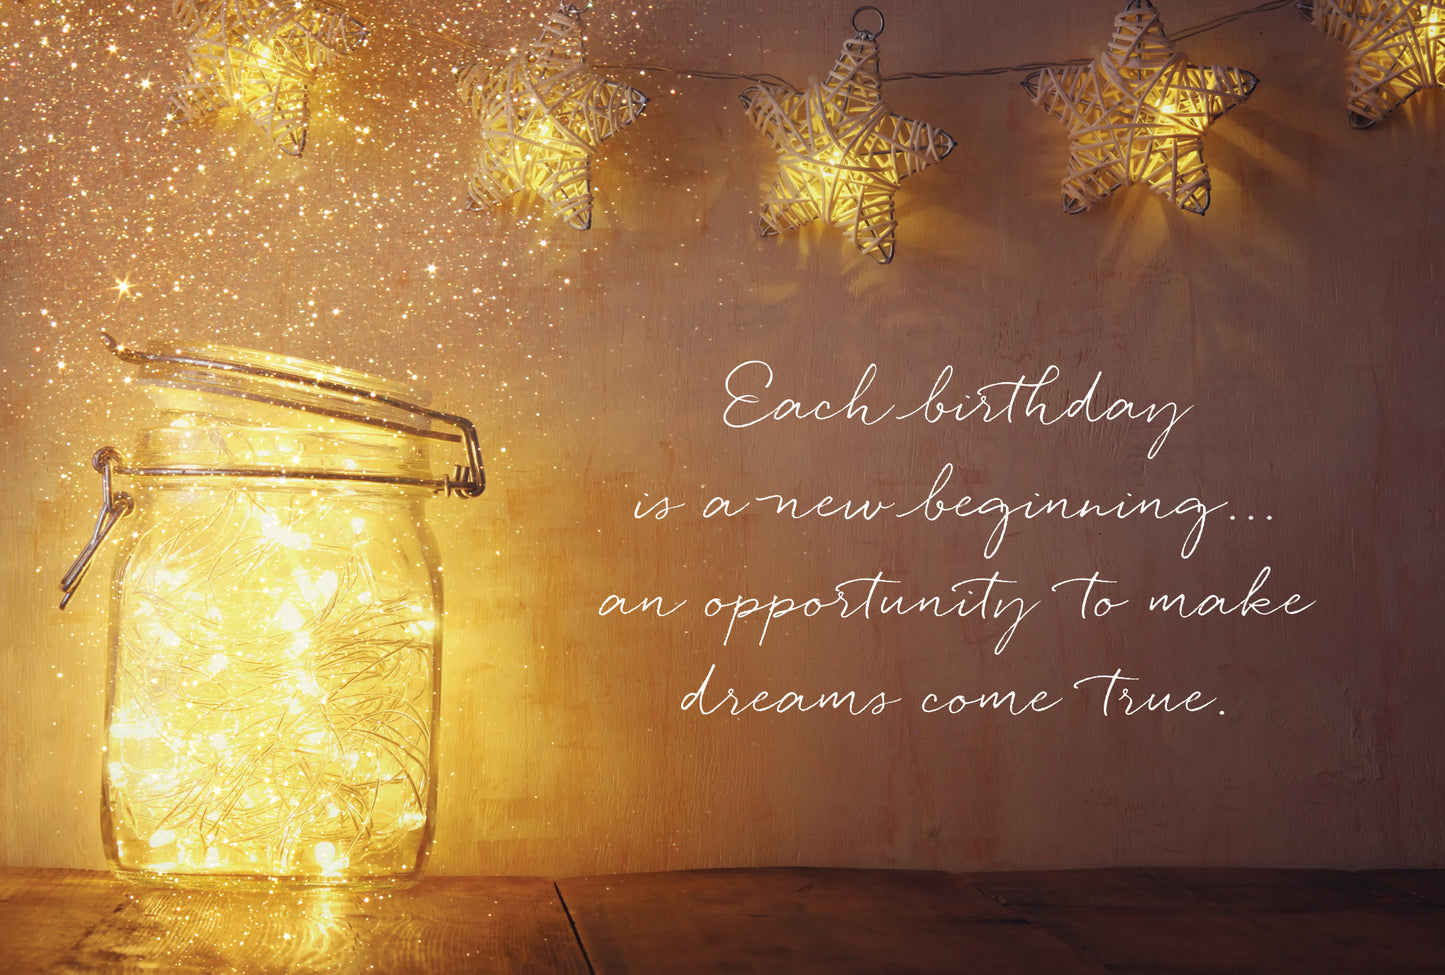 Mason Jar Nightlight Birthday Card - Cardmore